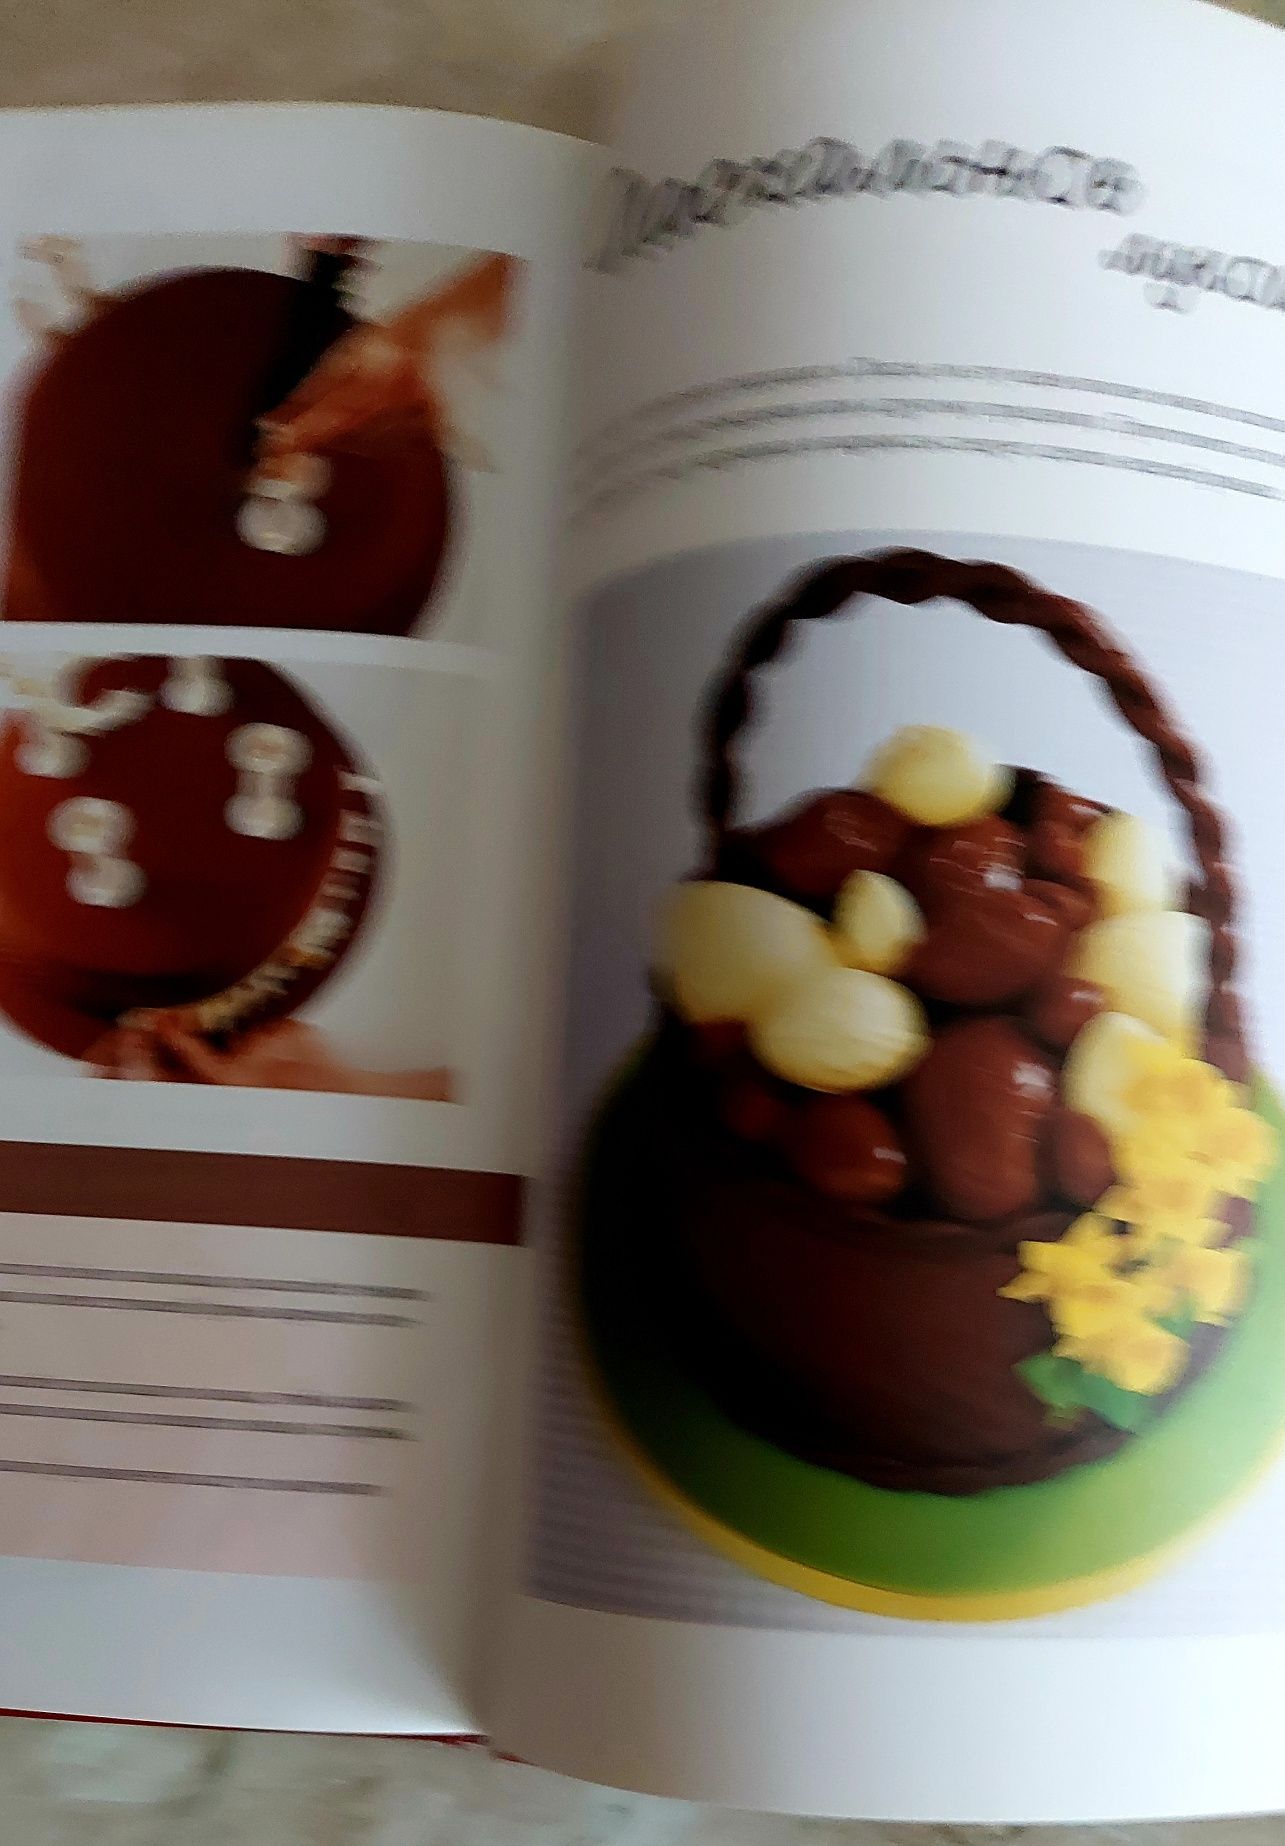 Книга кондитерская кулинария. Шоколадные торты